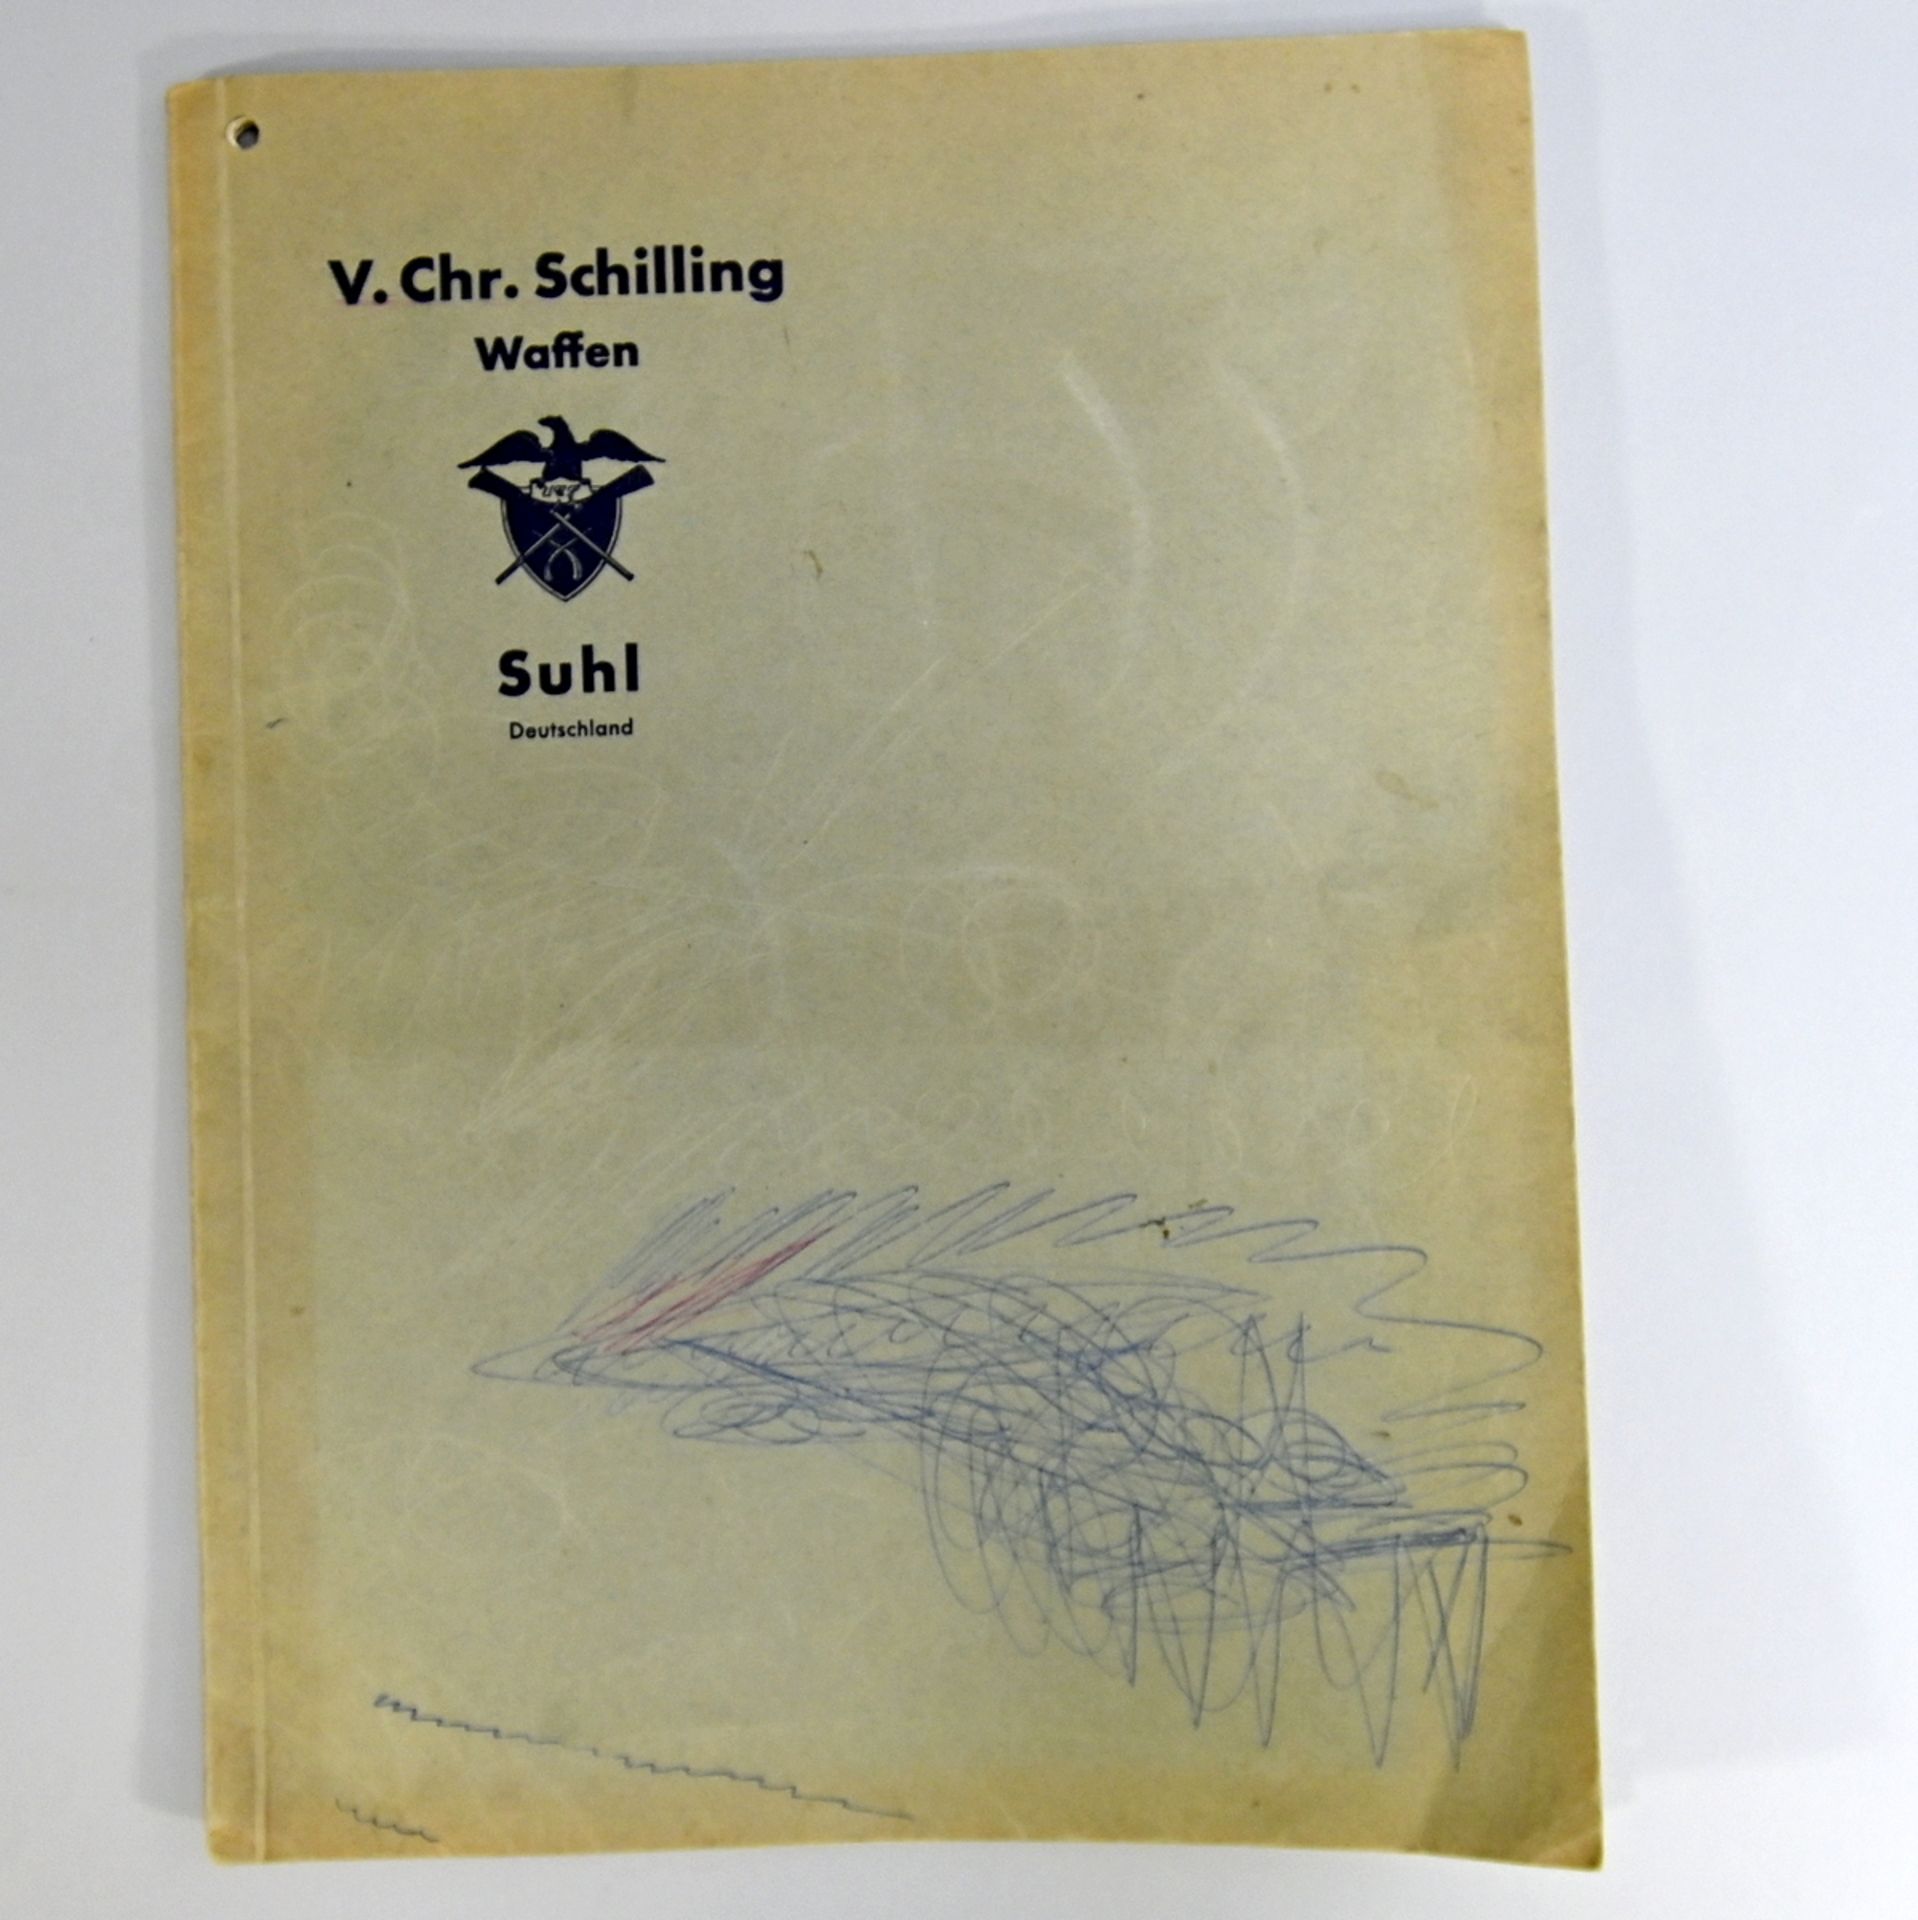 Waffen-Katalog 1939, V. Chr. Schilling Inh. L. Bornhöft, Suhl Deutschland, 40 Seiten mit Abbildungen